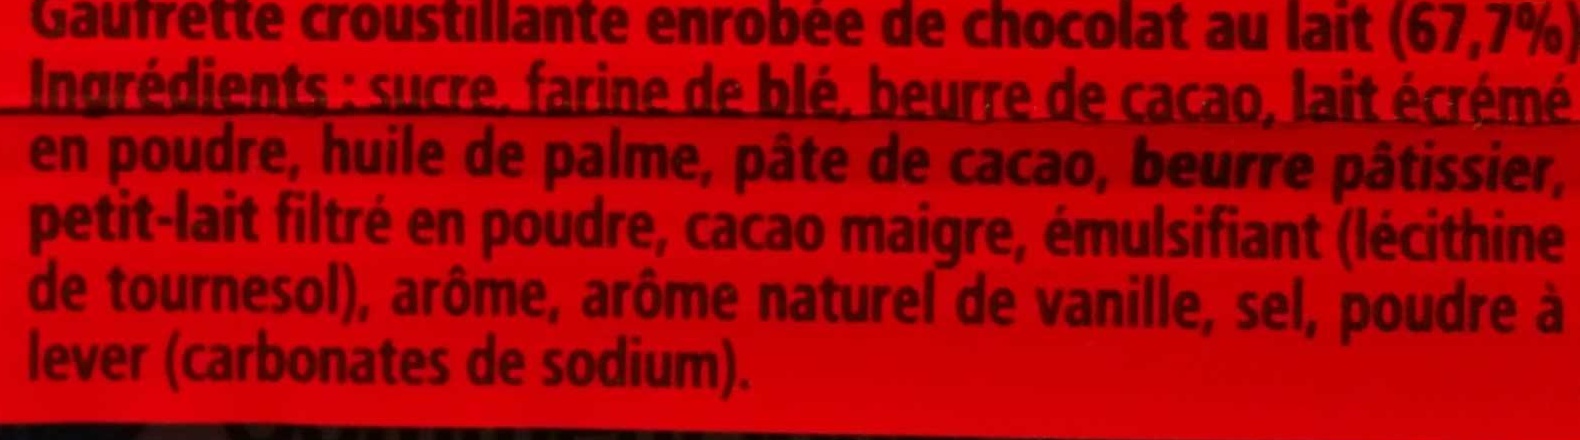 Kit Kat - Ingredients - fr